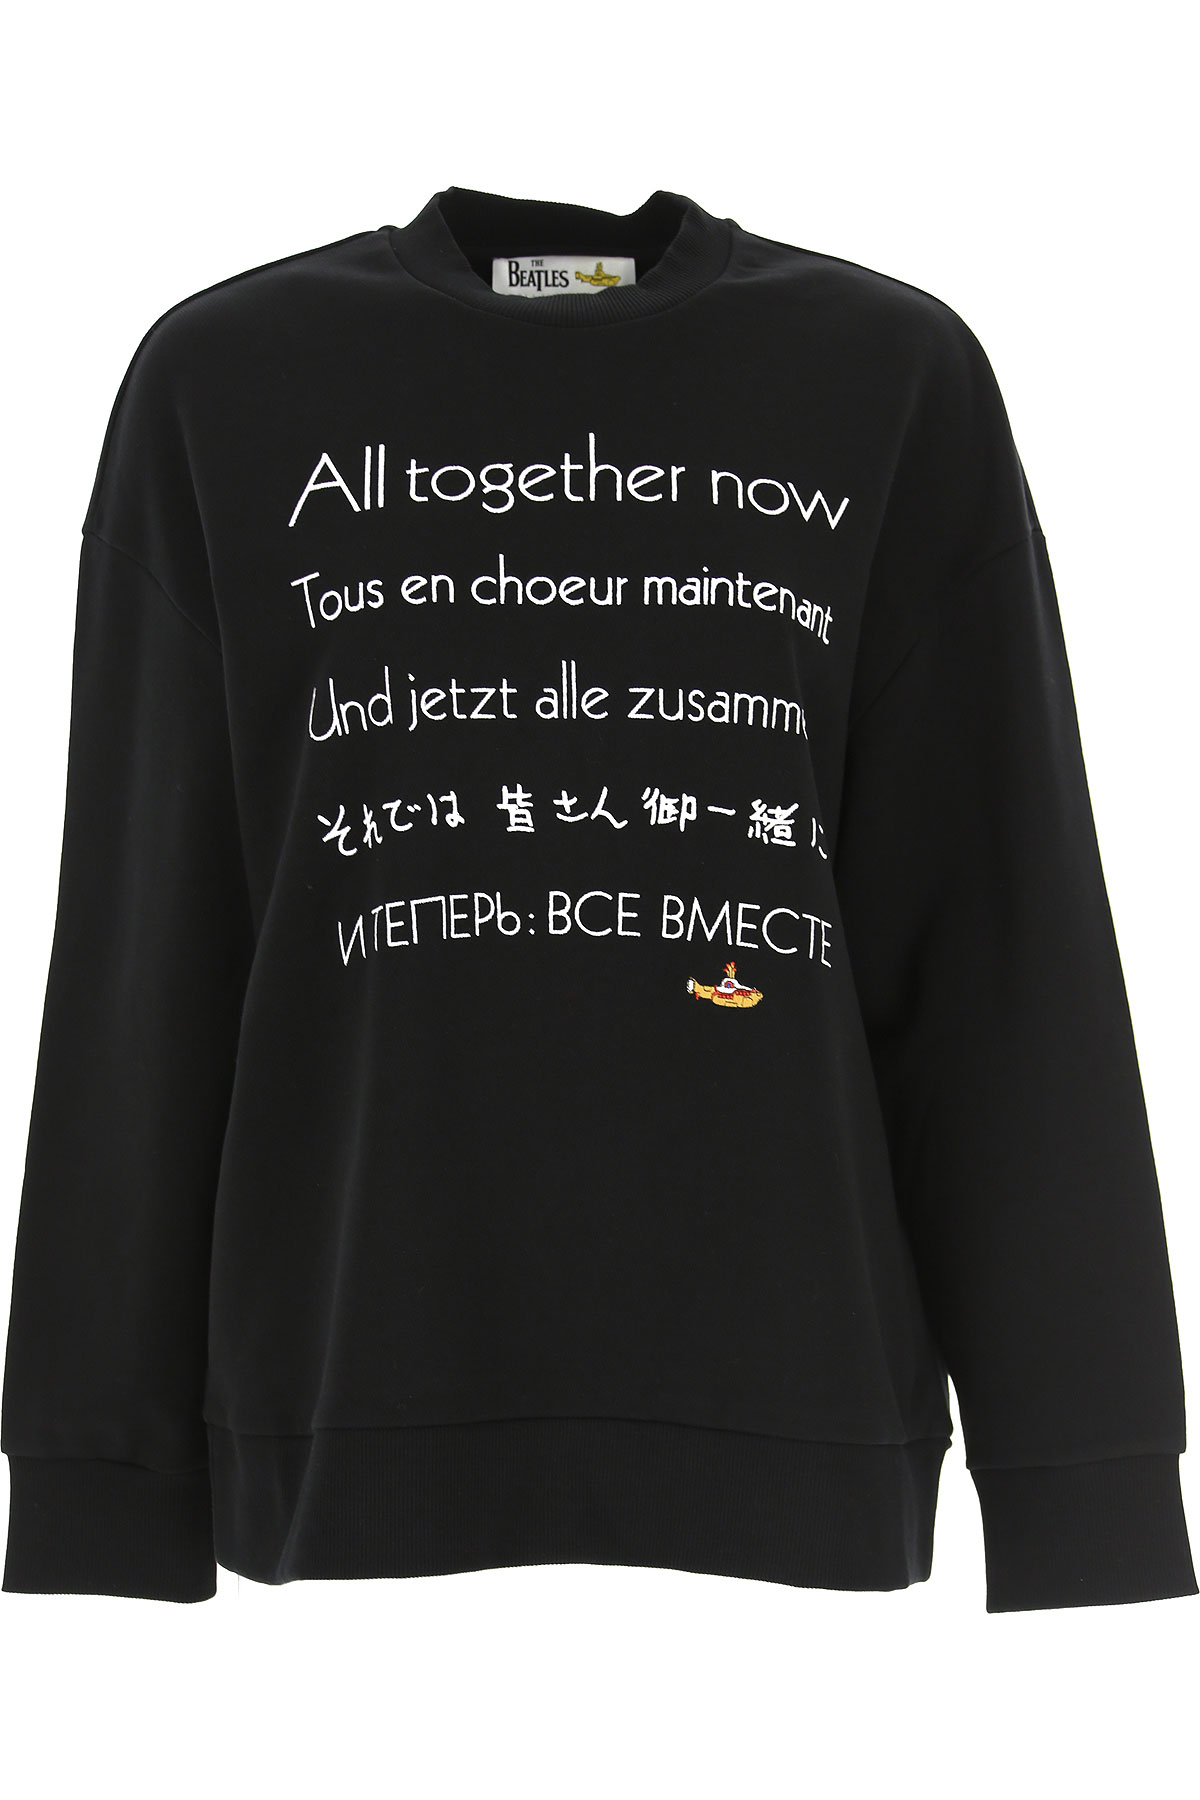 Stella McCartney Sweatshirt für Damen, Kapuzenpulli, Hoodie, Sweats Günstig im Sale, Schwarz, Baumwolle, 2017, 38 XXS